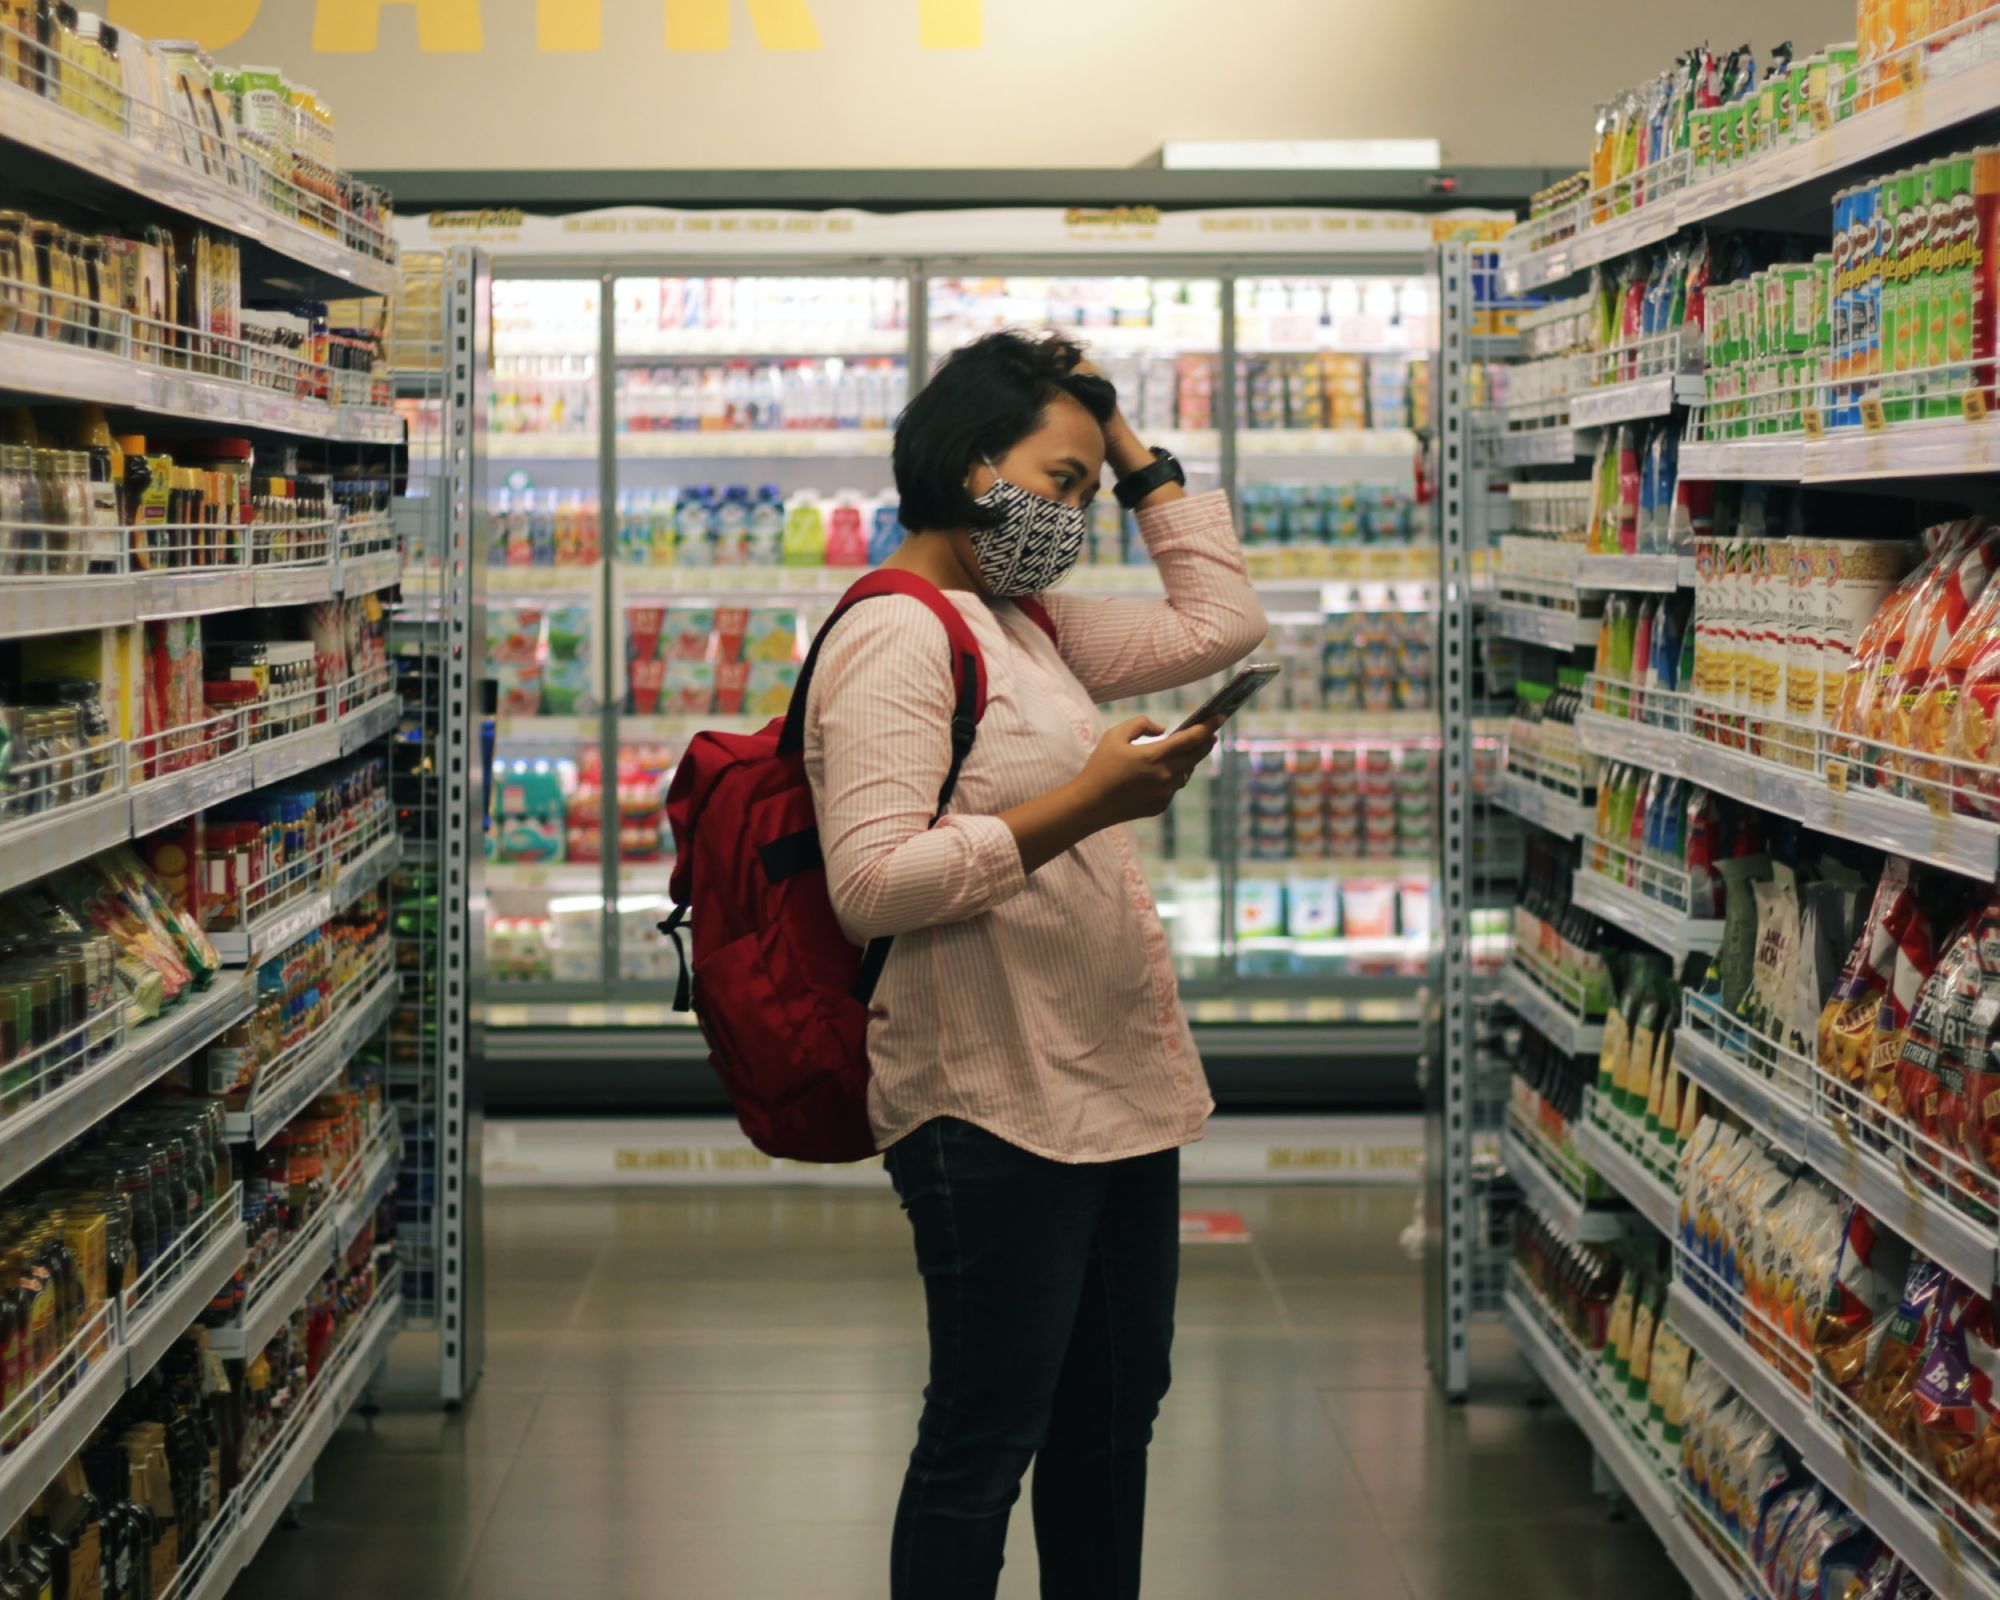 Frau im Supermarkt mit vollen Regalen an den Seiten und Kühlschränke im Hintergrund